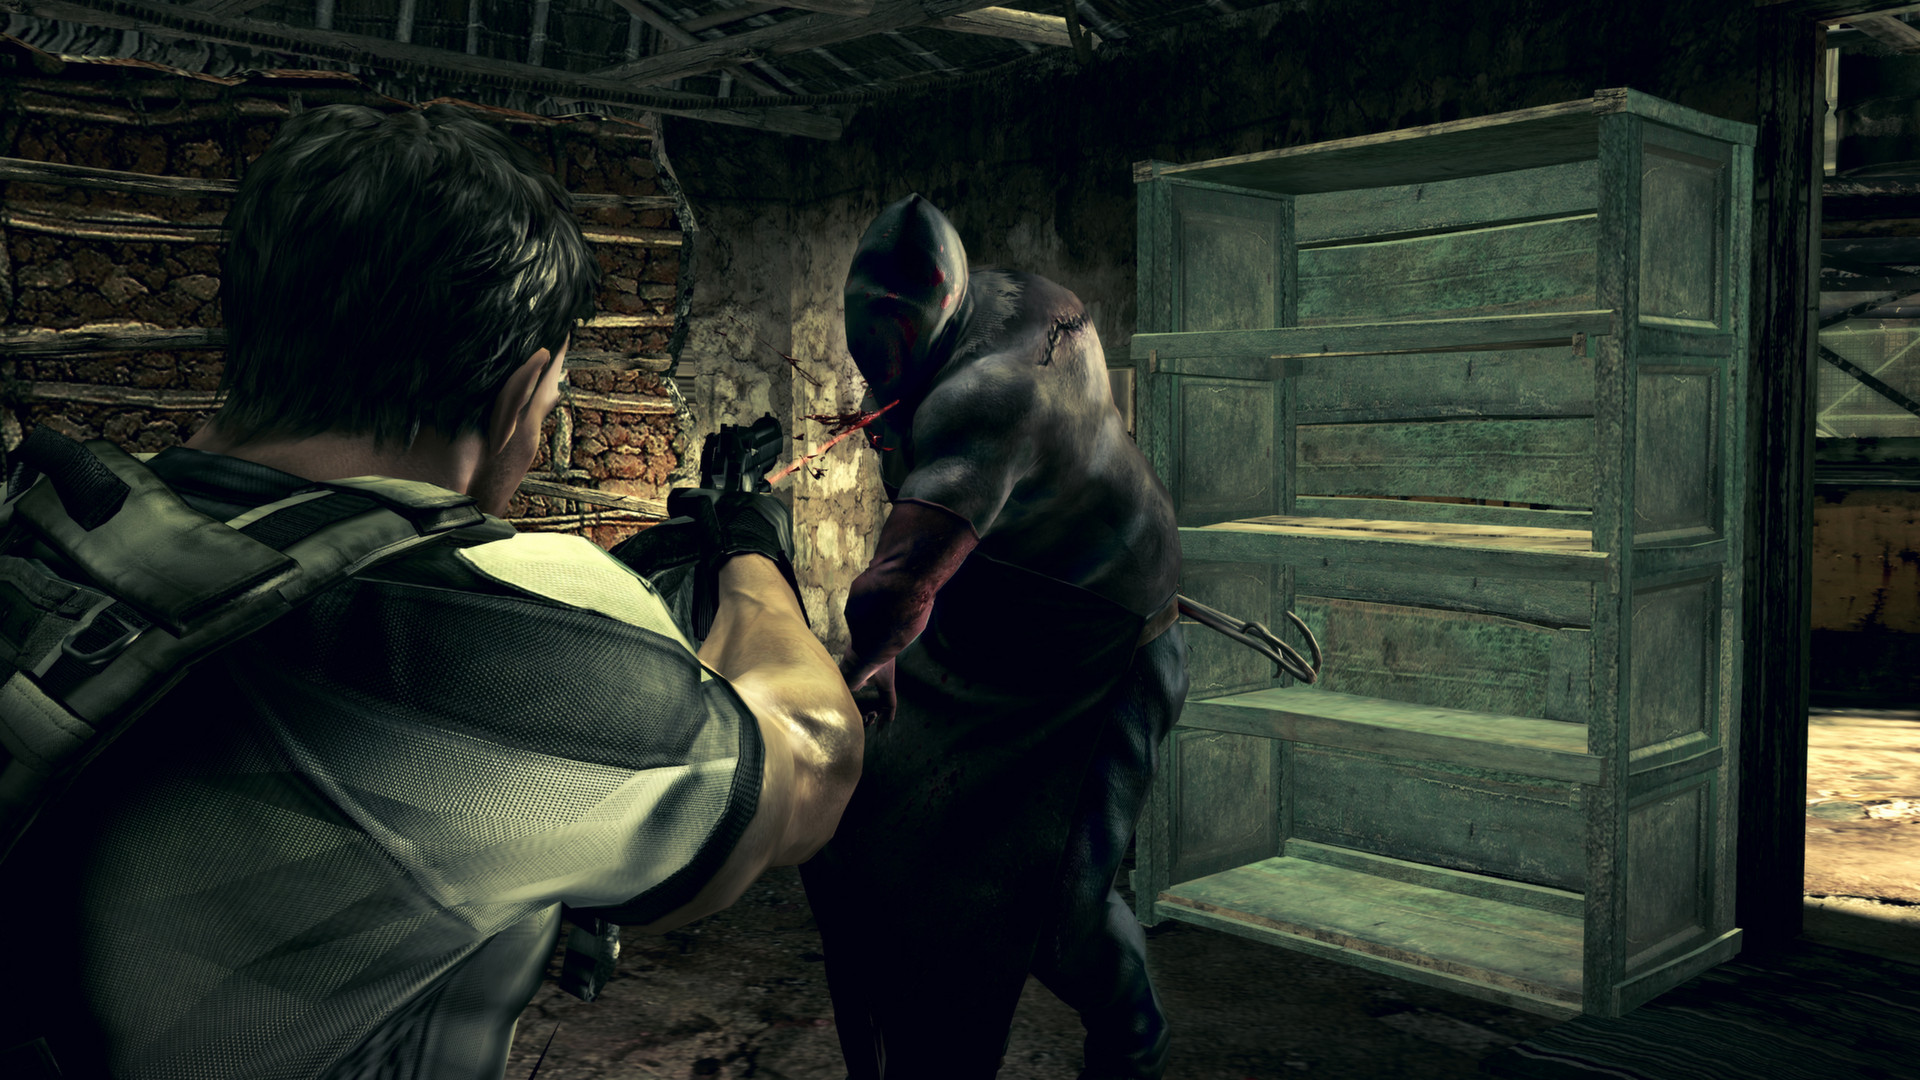 Resident Evil 5 (Steam Gift Region Free / ROW)